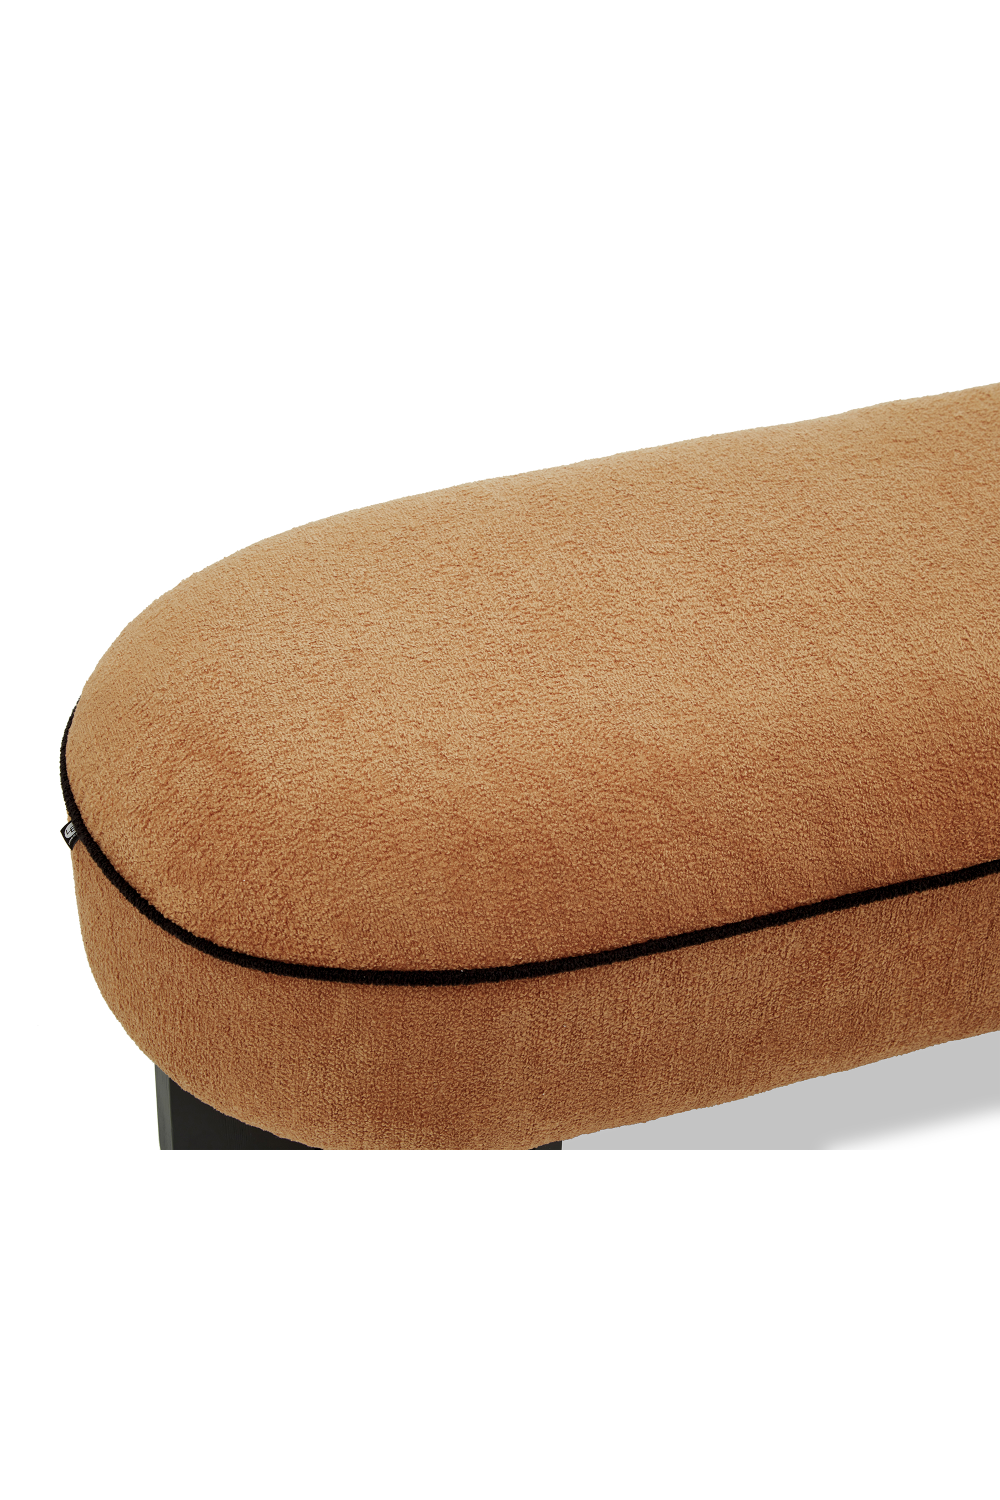 Oval Upholstered Long Bench | Liang & Eimil Lander | Oroa.com